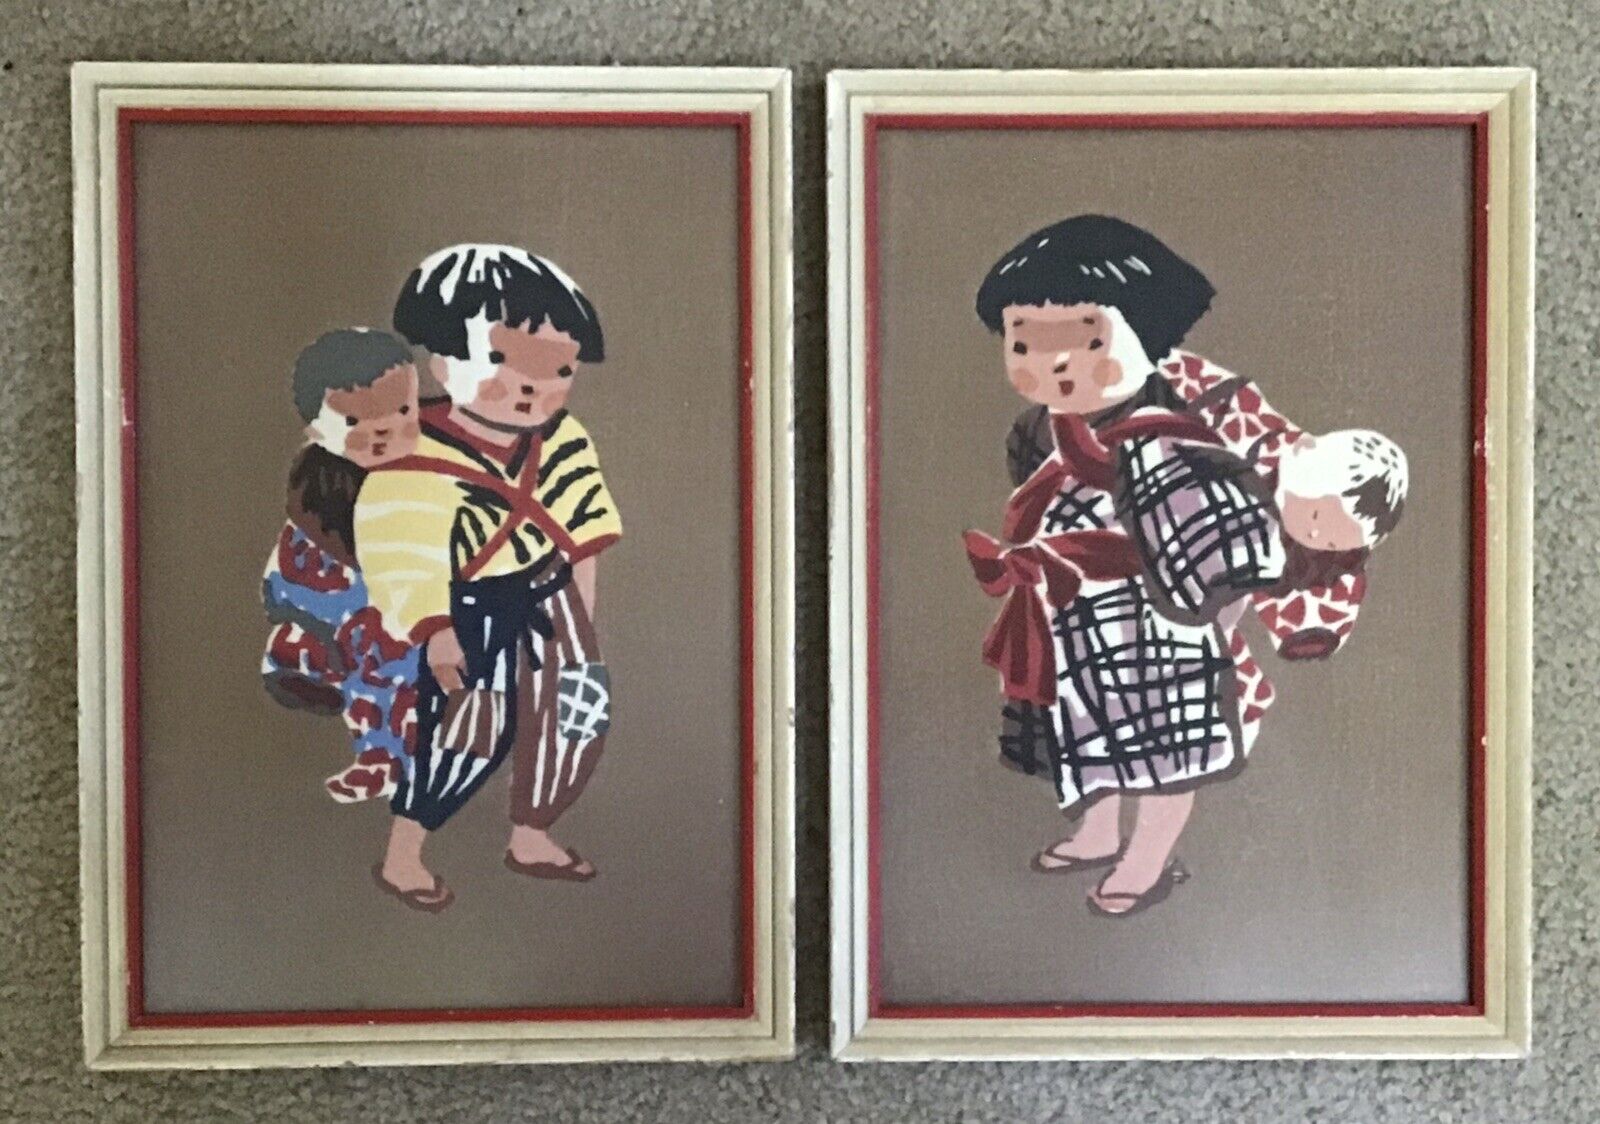 Pair of Original Japanese Woodblocks Prints By Kiyoshi Saito, Boy & Girl